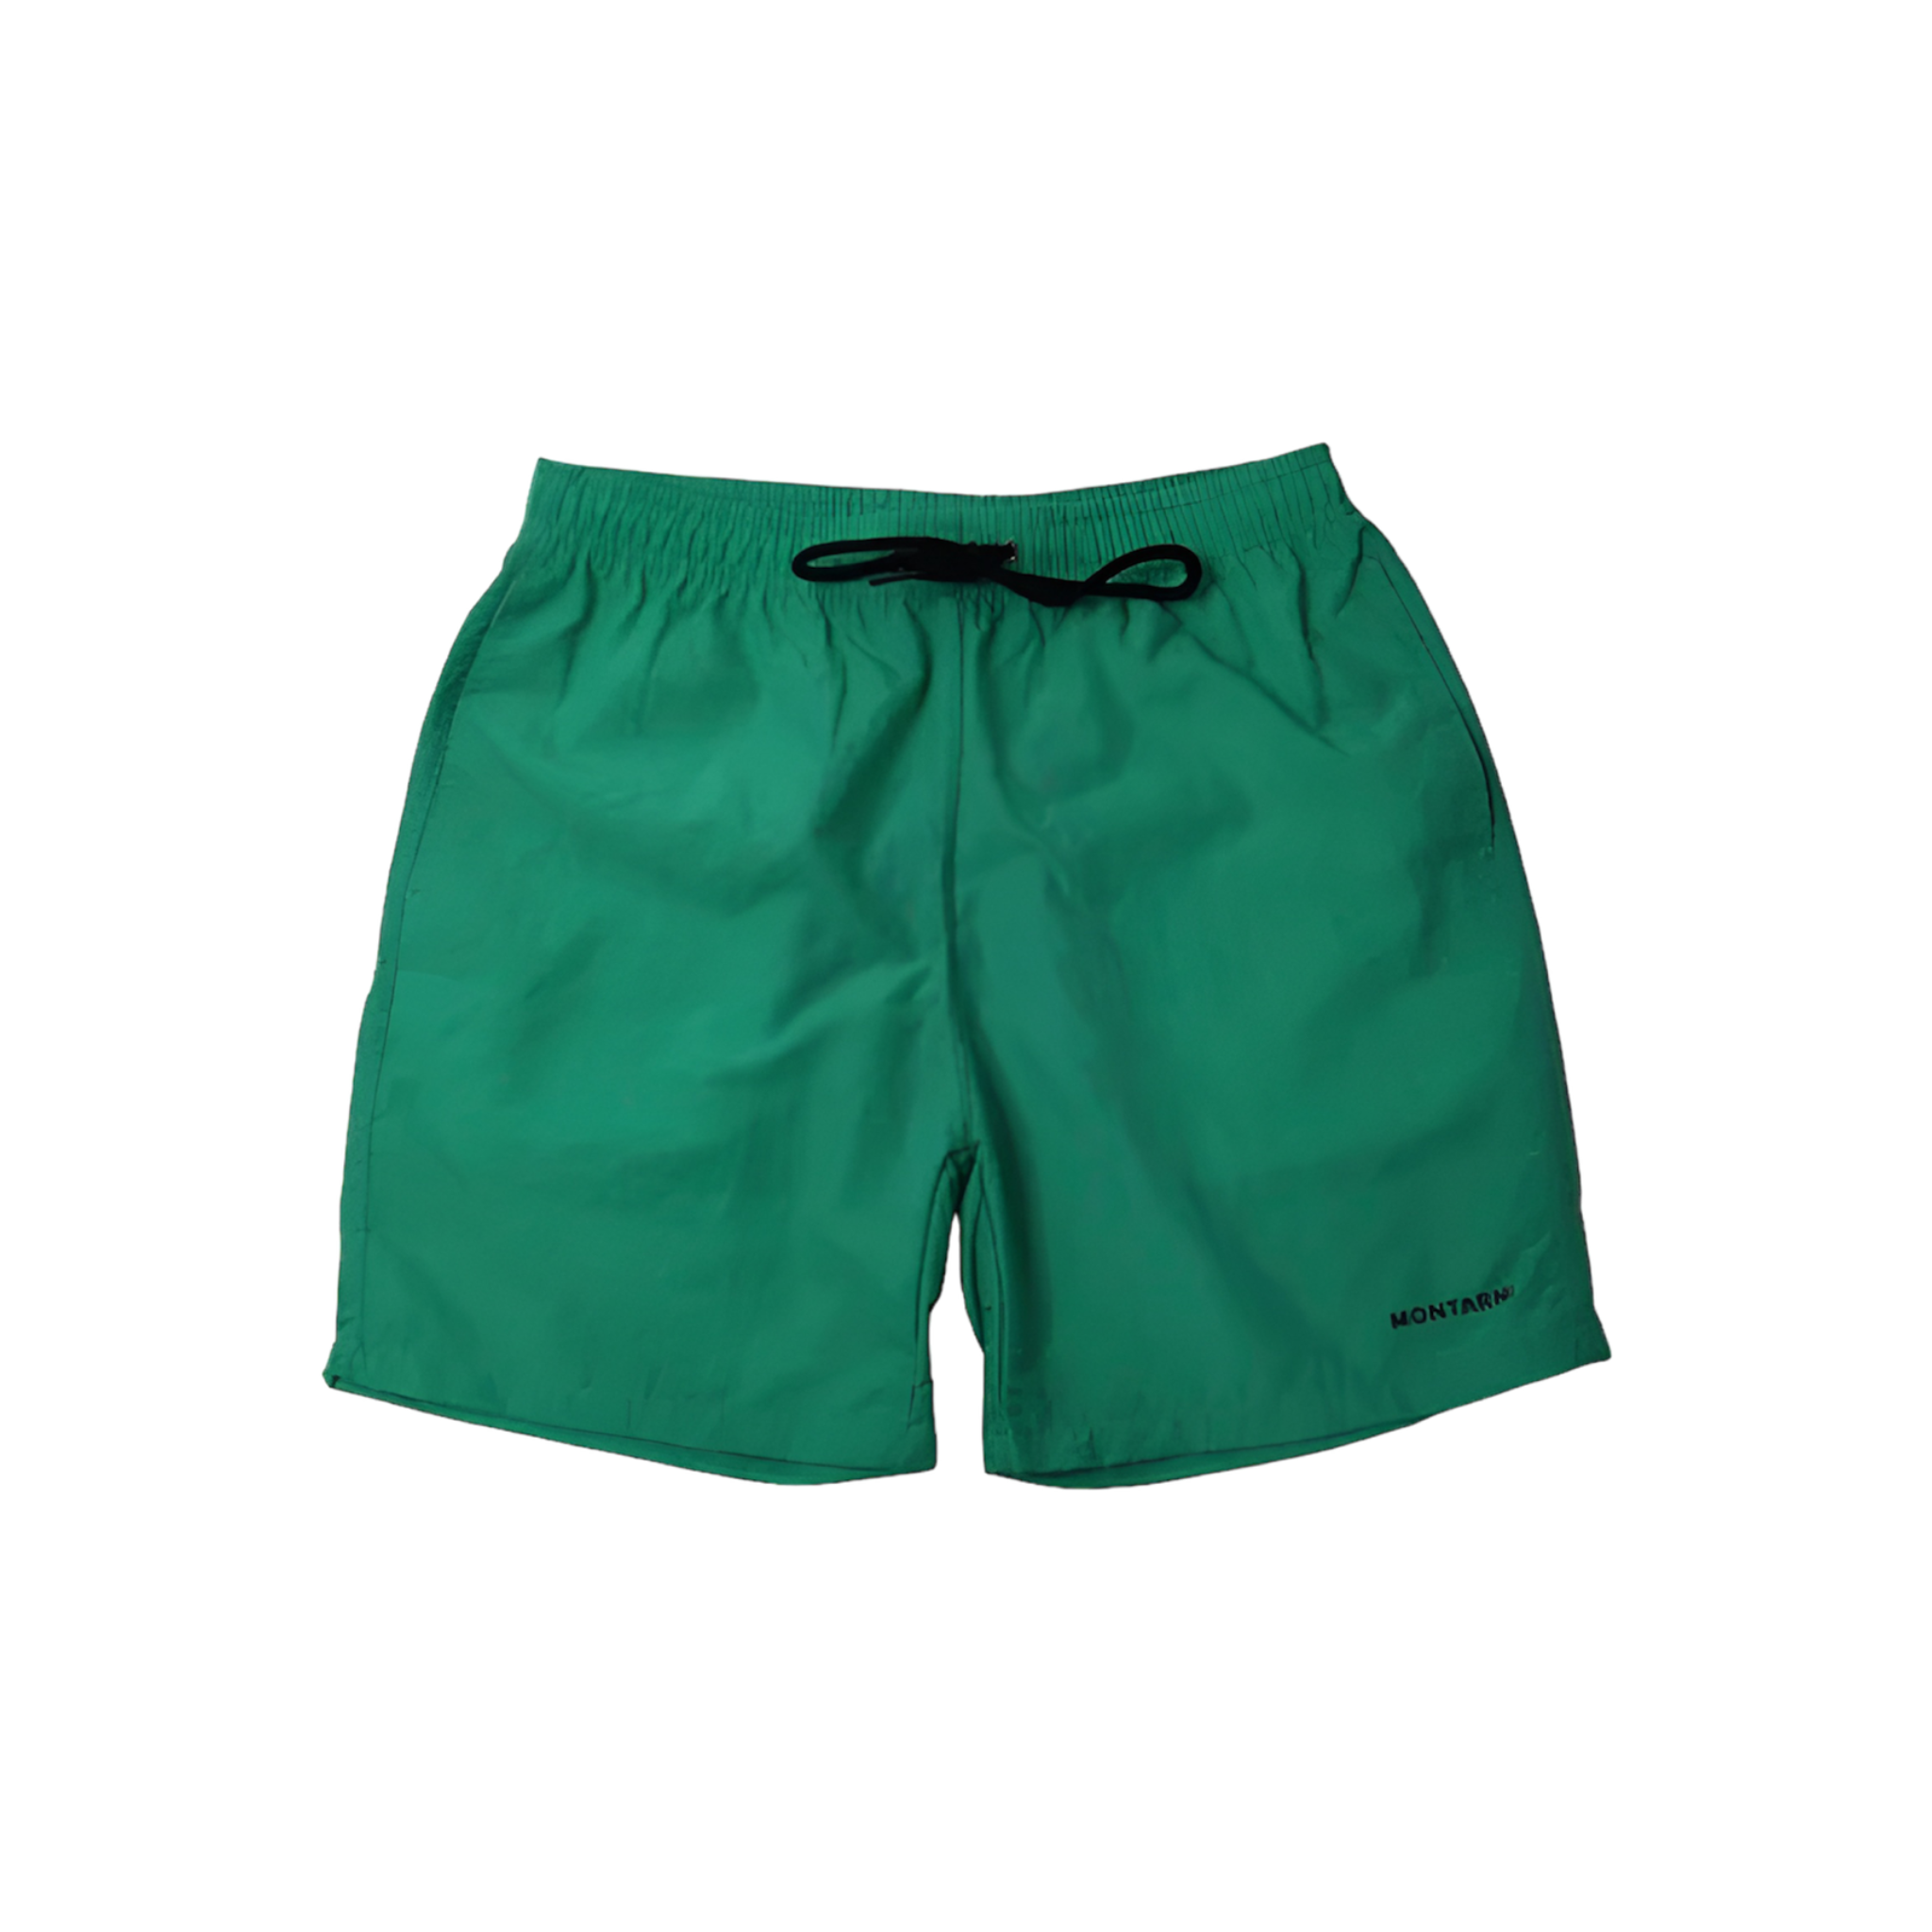 MONTARNI - Green Beach Shorts